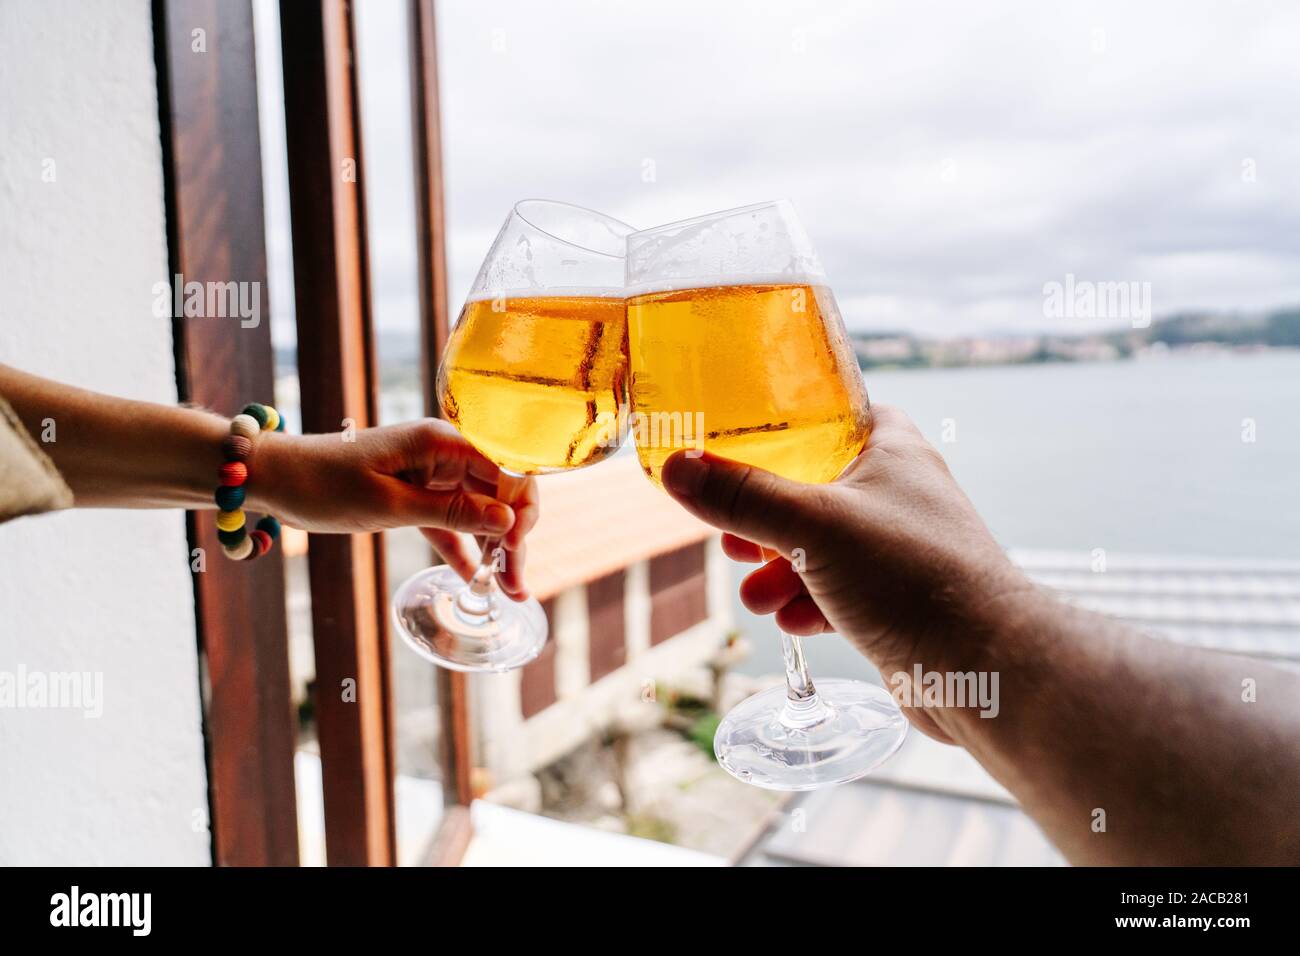 Détail des mains de deux people toasting with beer dans la fenêtre d'un restaurant avec vue sur la mer Banque D'Images